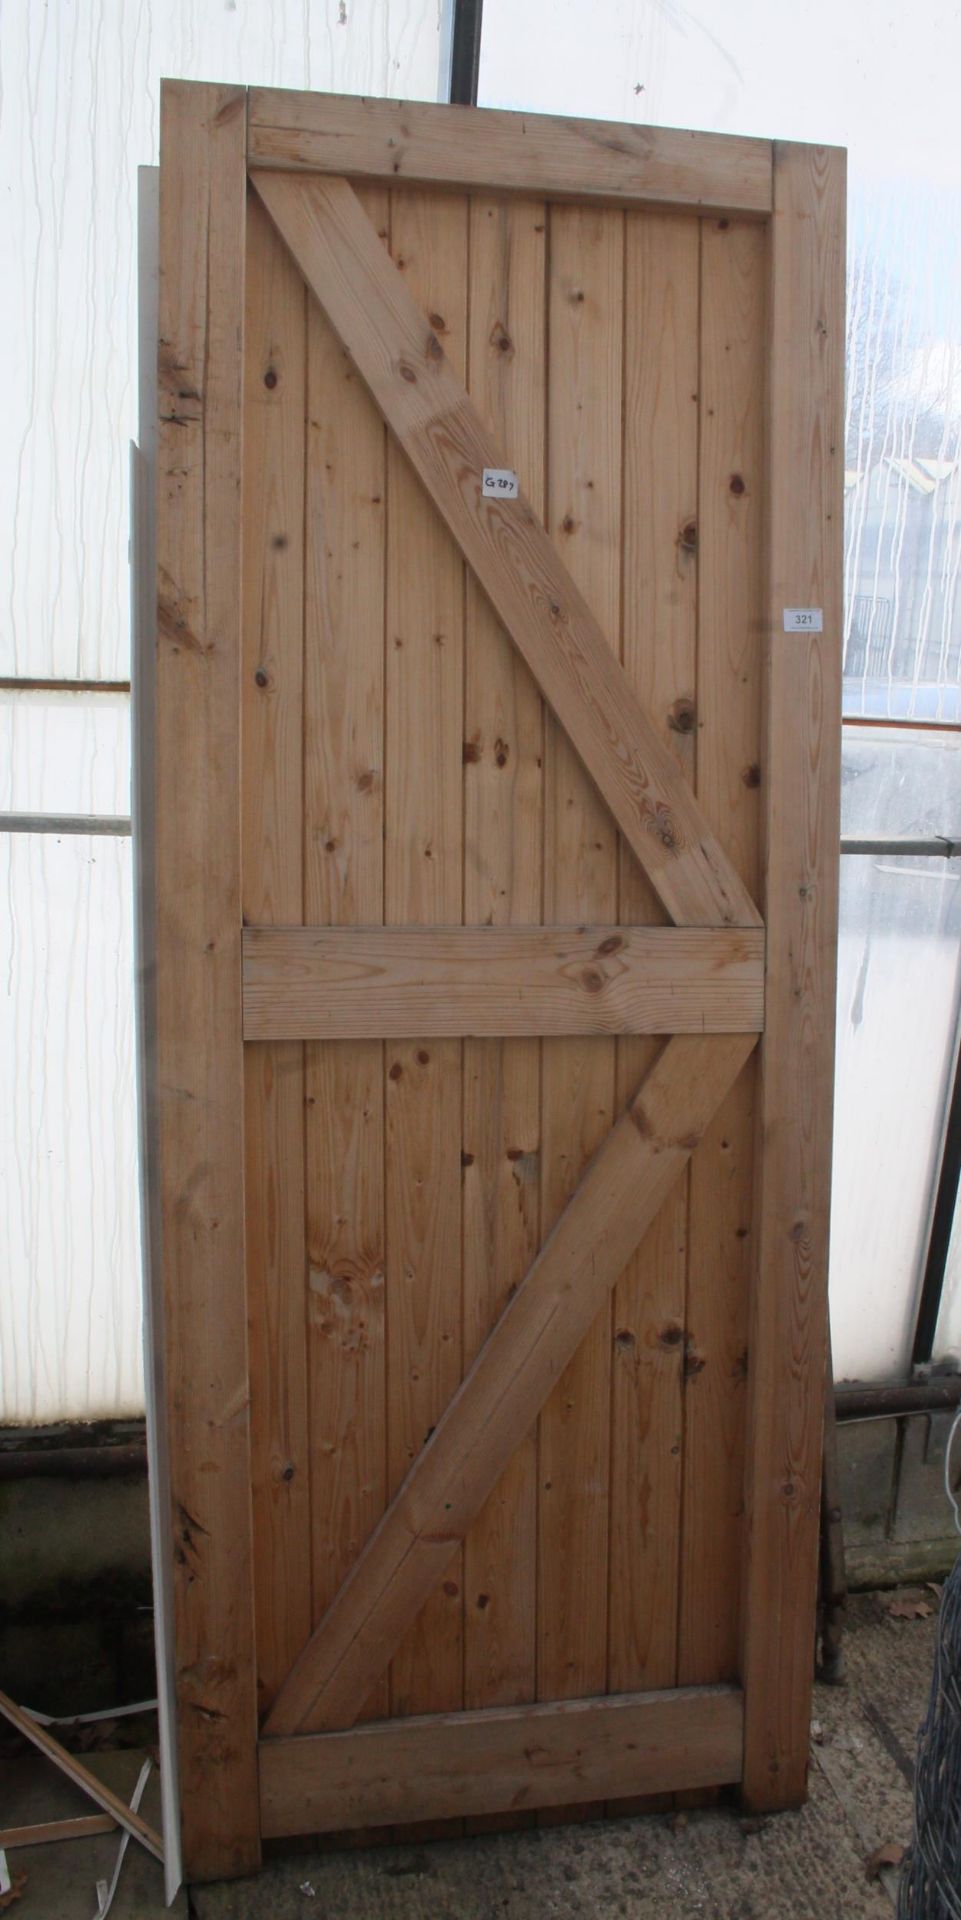 GARDEN GATE 30" X 78" AND INTERNAL DOOR NO VAT - Image 2 of 2